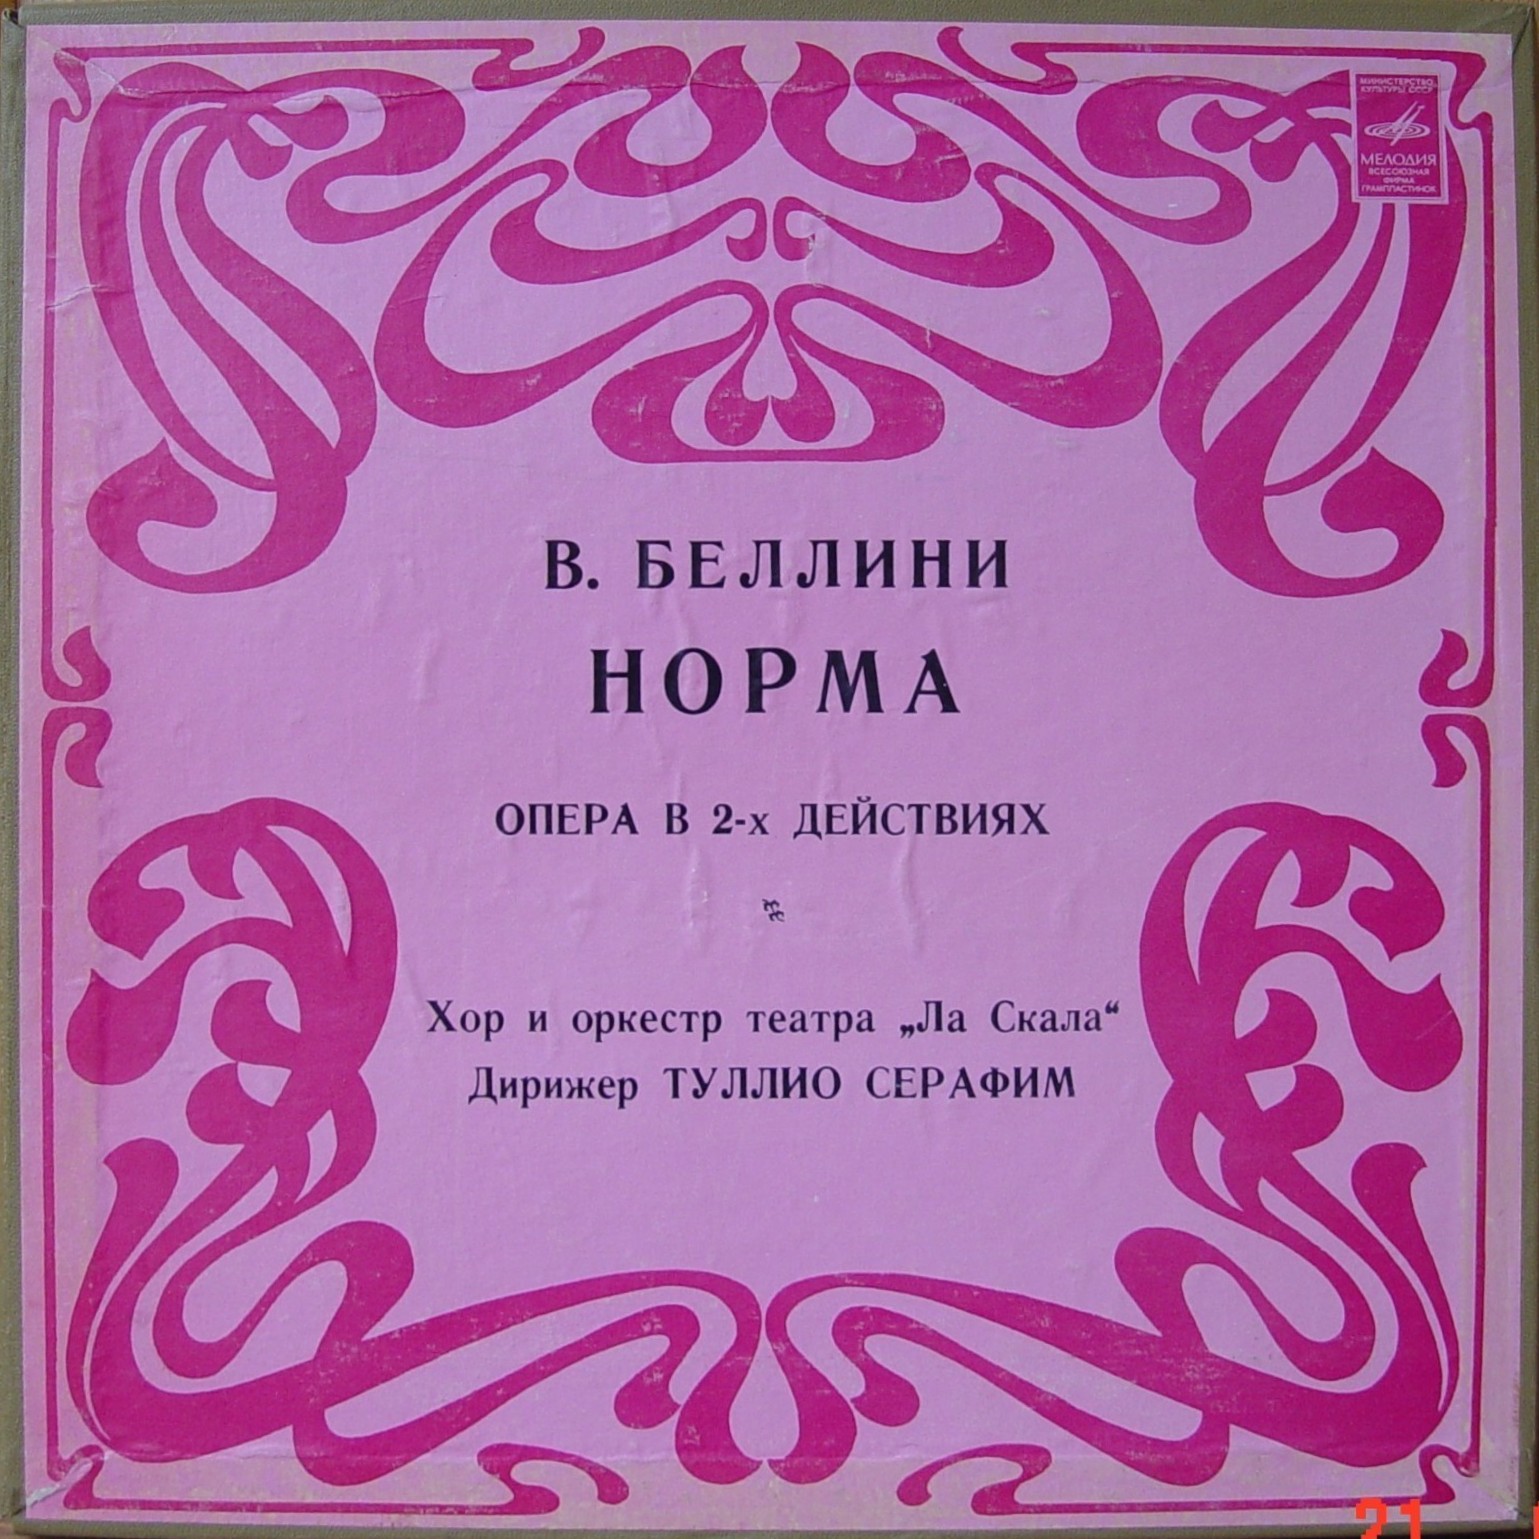 В. БЕЛЛИНИ: "Норма", опера в 2 д.